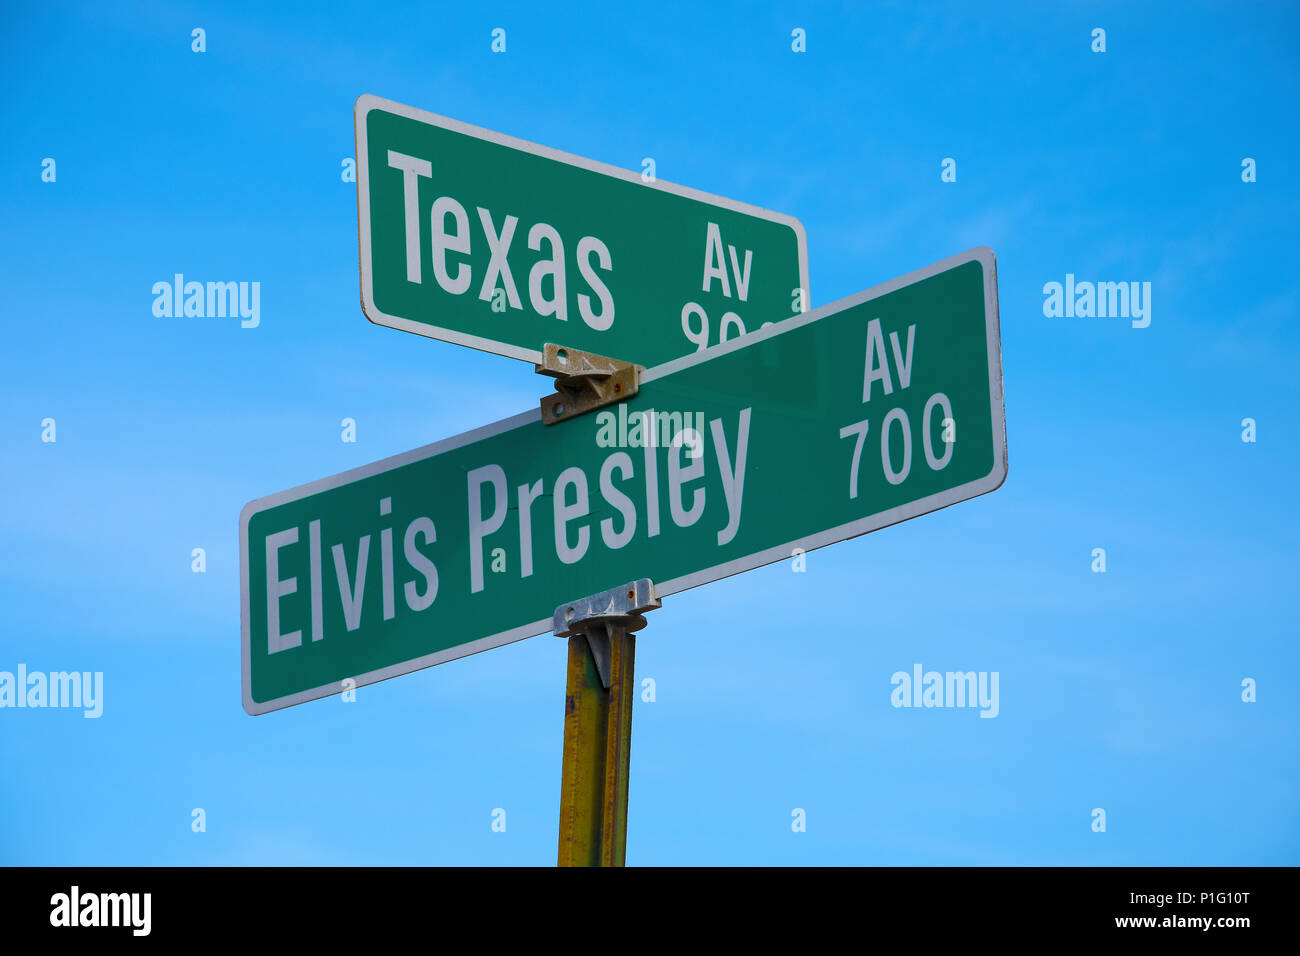 SHREVEPORT, LA., U.S.A. - déc. 18, 2016 : l'intersection près de l'endroit où Elvis Presley a fait ses débuts en national Octobre 1954. Banque D'Images